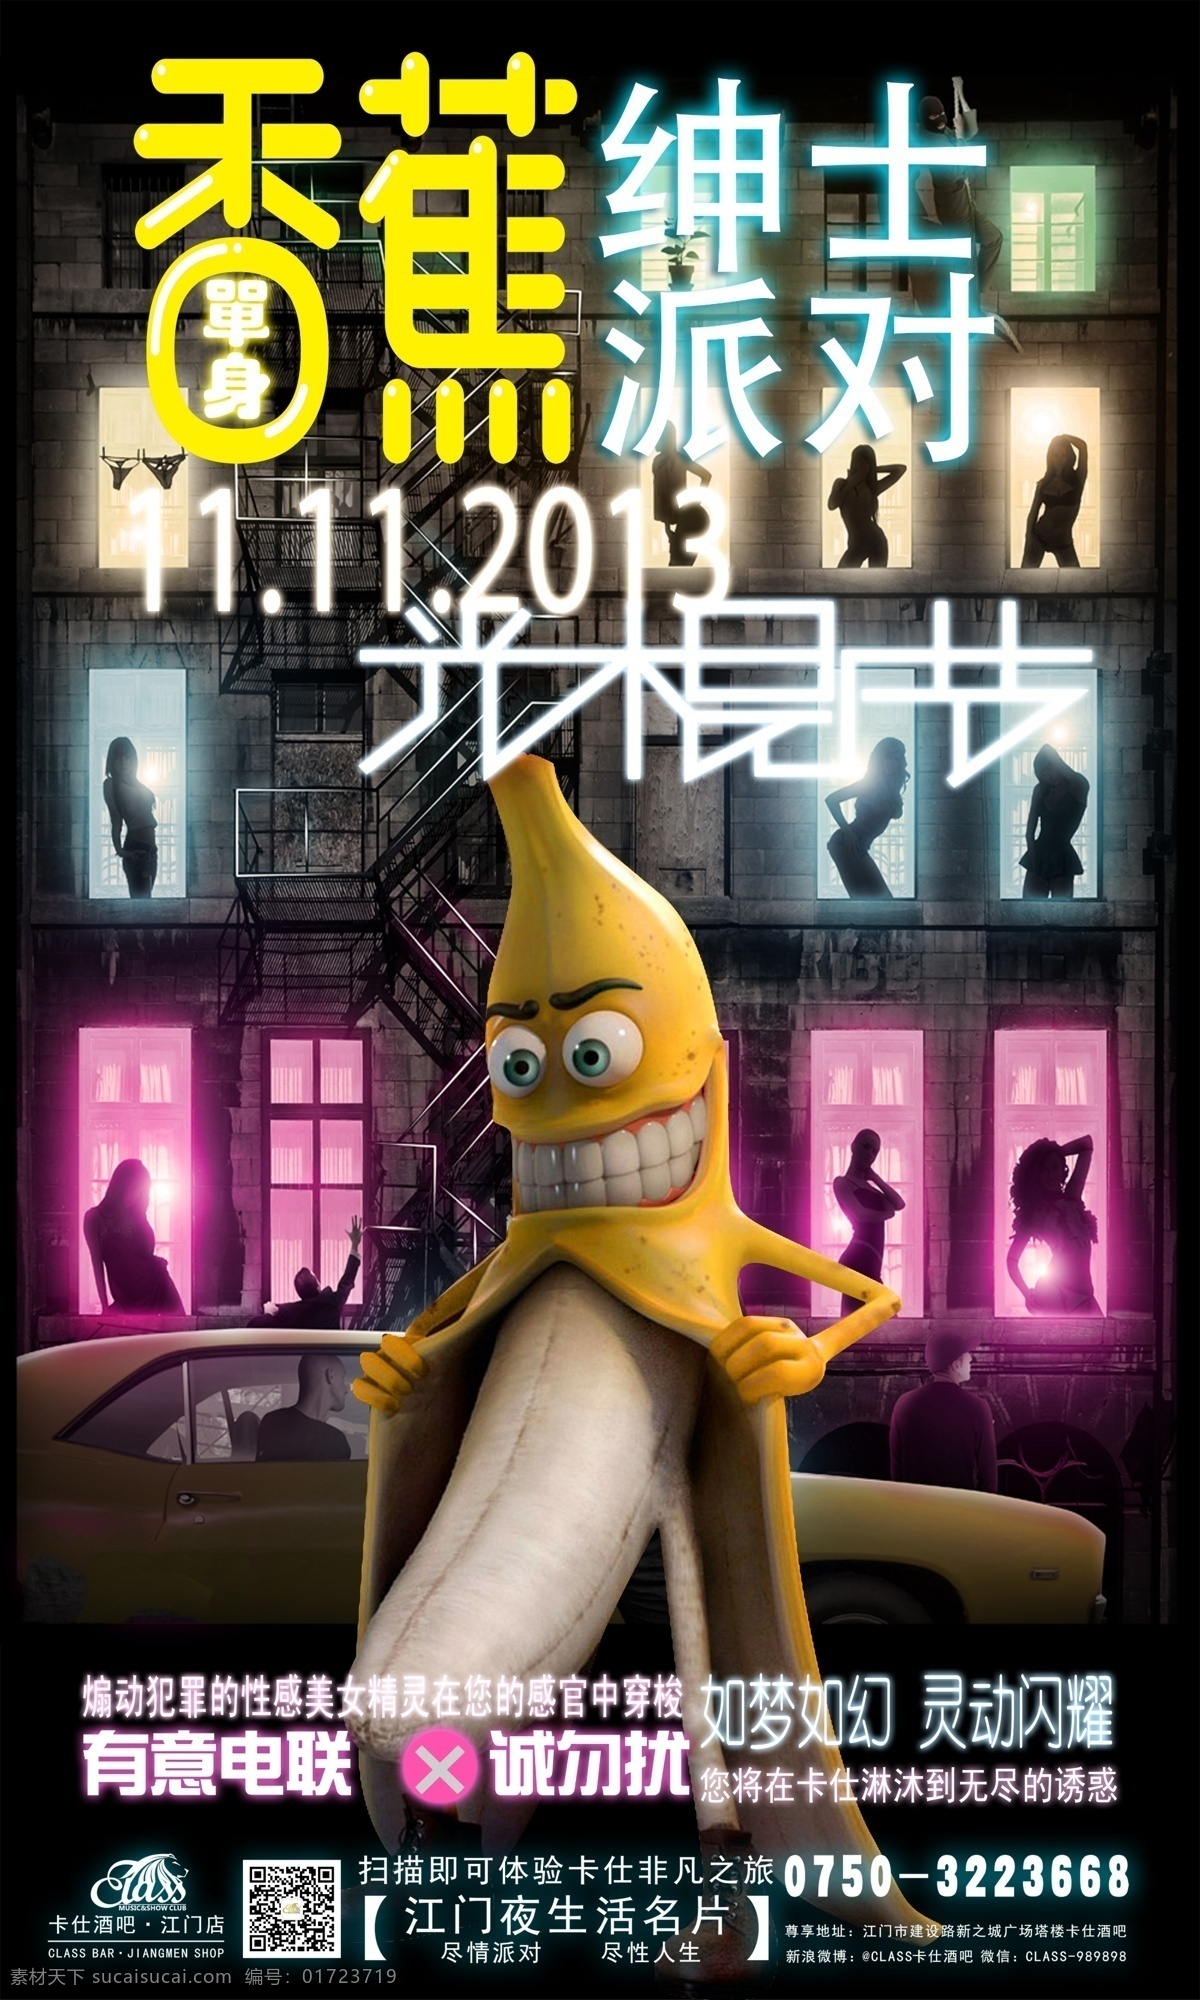 光棍节派对 酒吧 光棍 节 派对 双十一 光棍节 香蕉派对 香蕉 邪恶的香蕉 广告设计模板 源文件